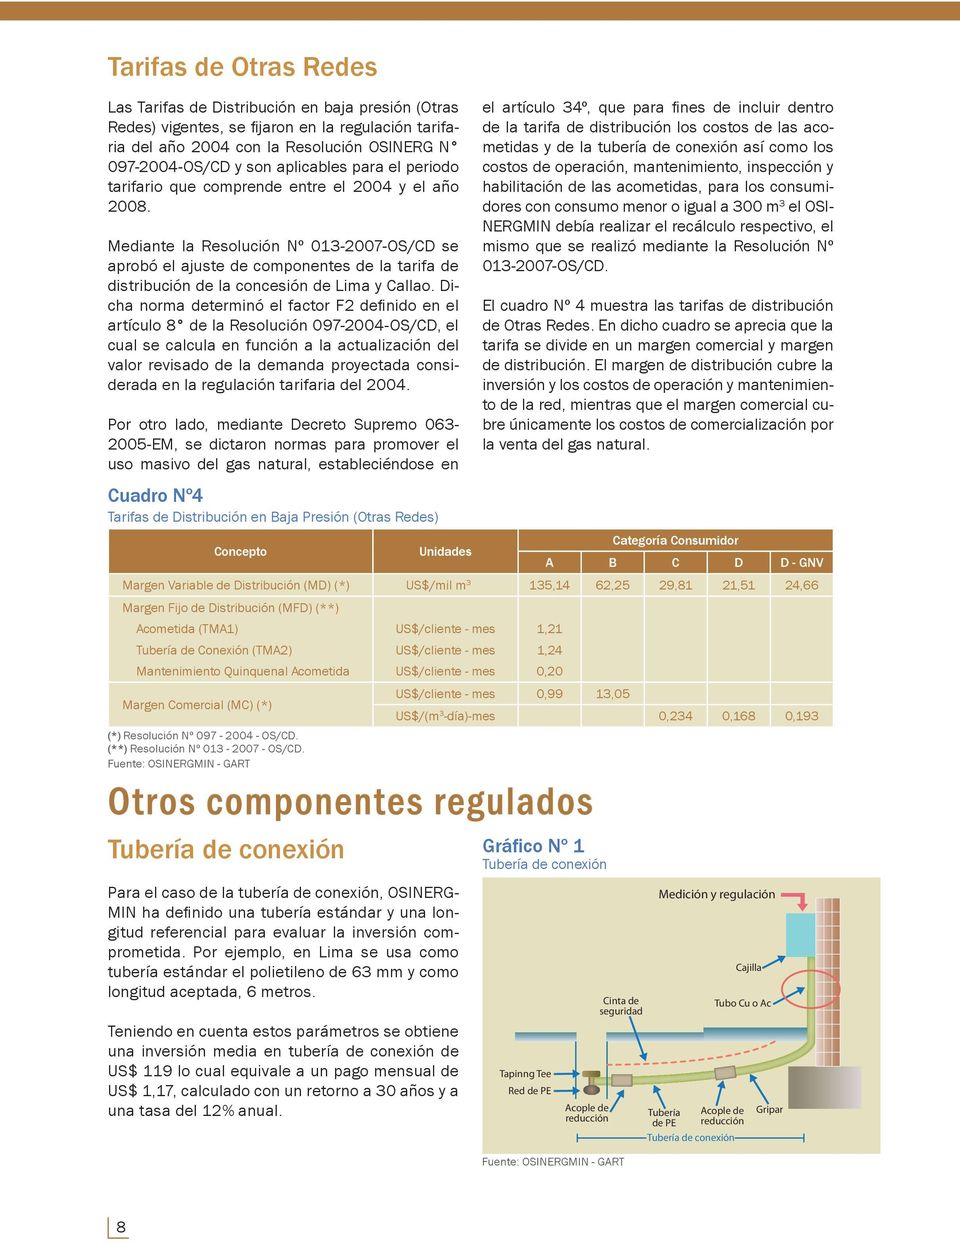 Mediante la Resolución Nº 013-2007-OS/CD se aprobó el ajuste de componentes de la tarifa de distribución de la concesión de Lima y Callao.